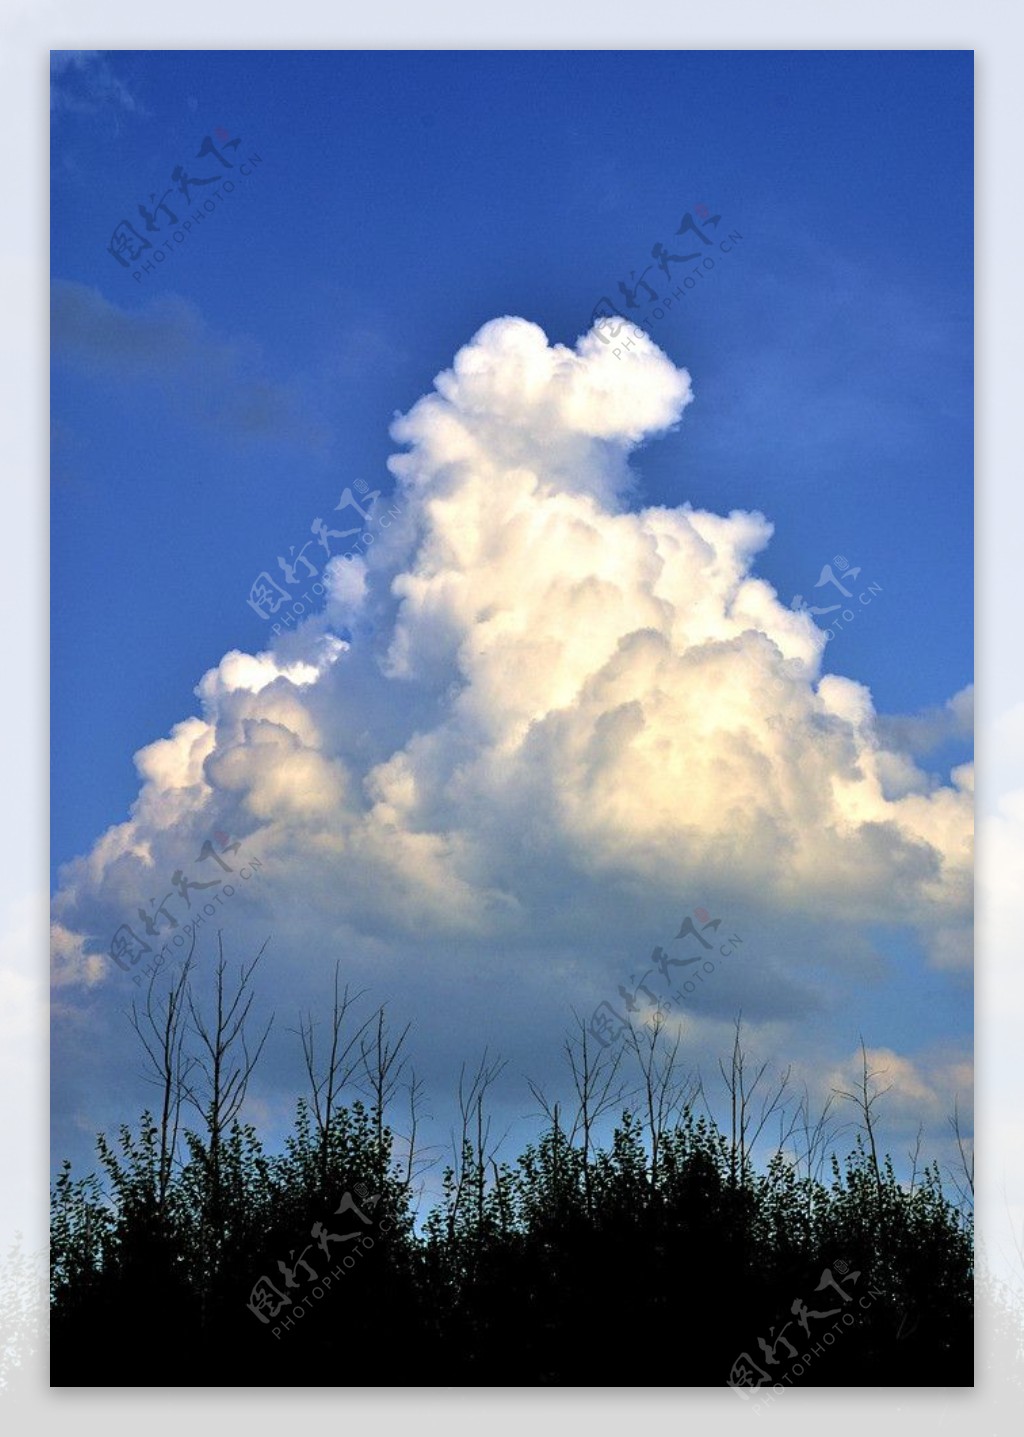 蓝天白云绿树图片